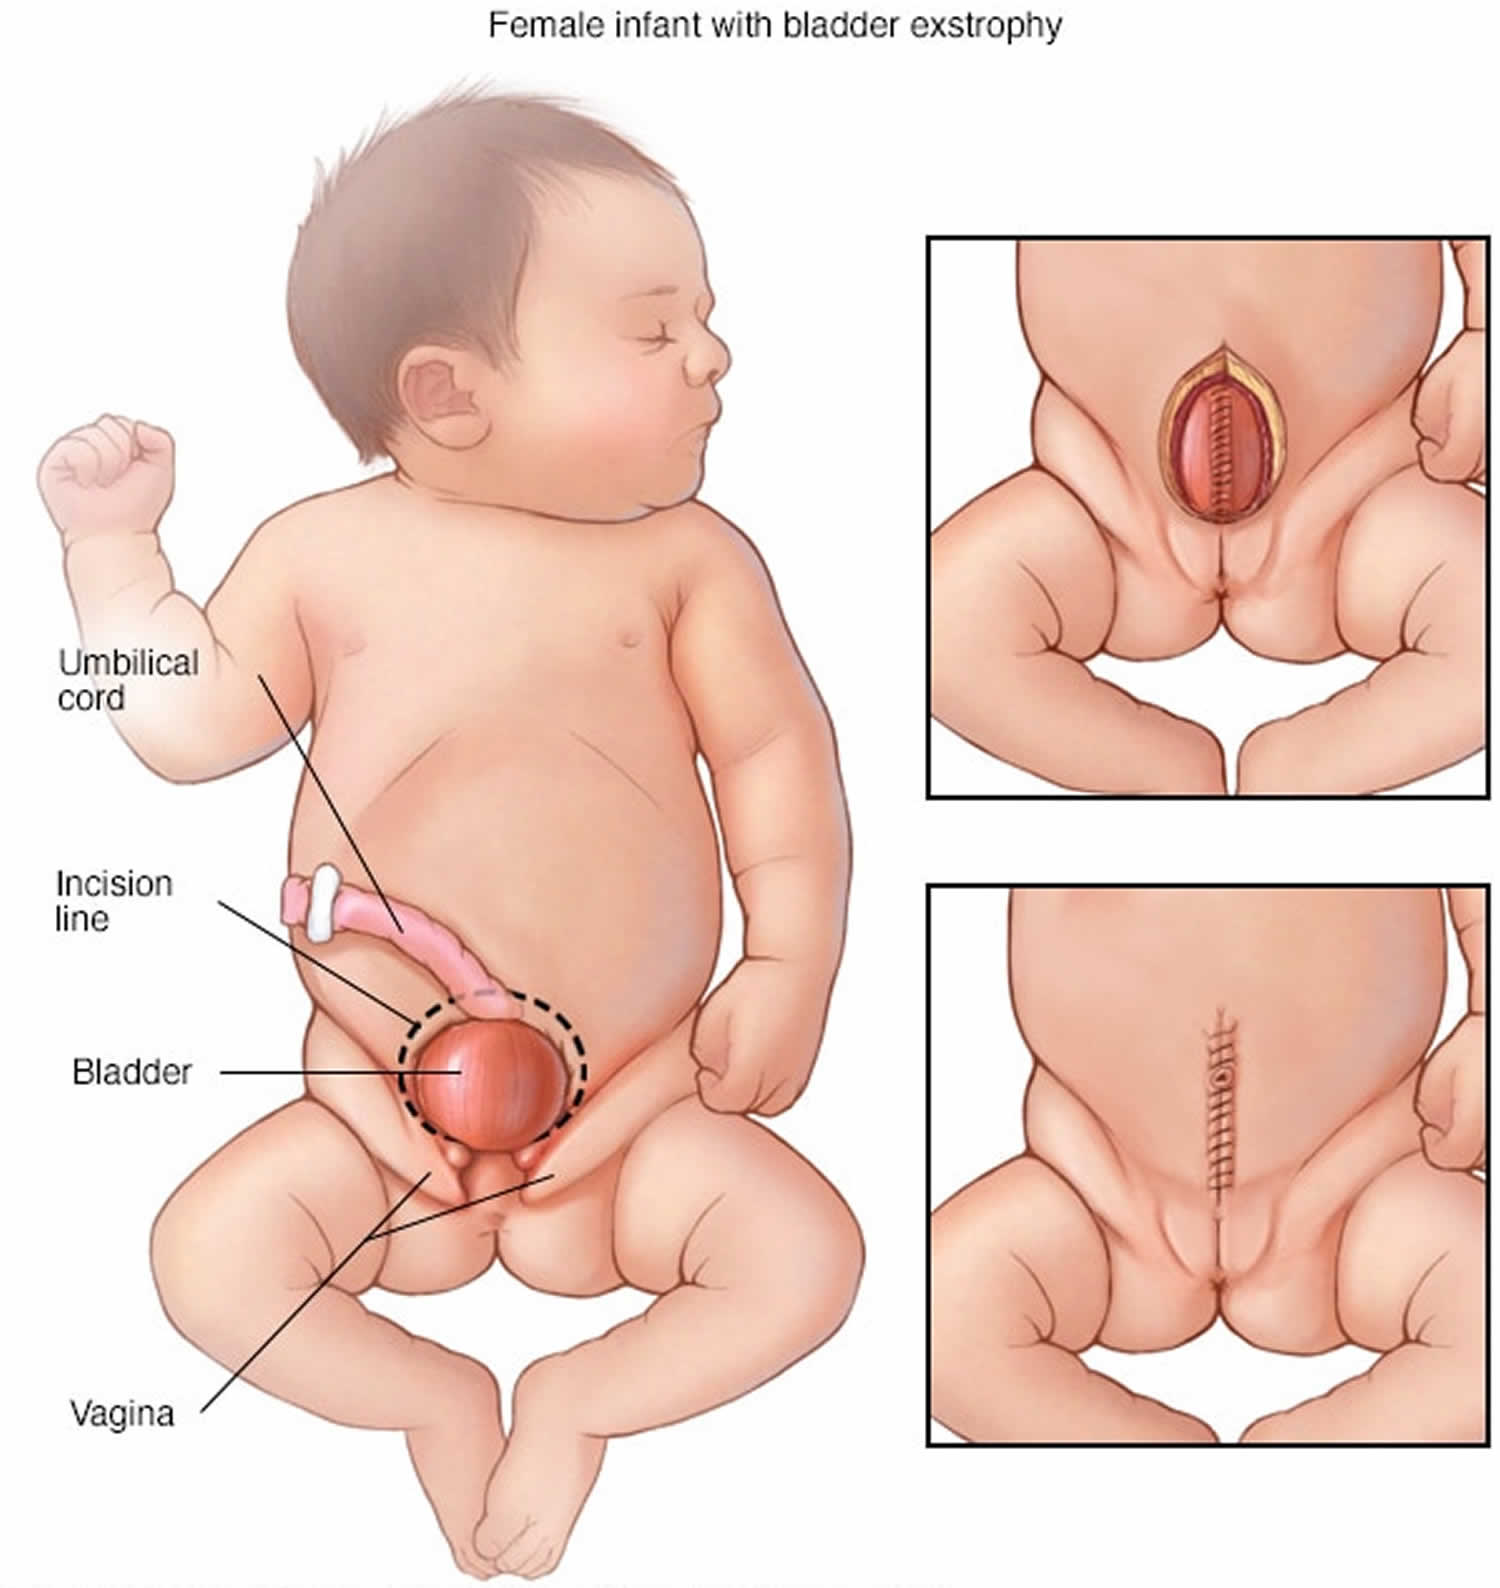 cloacal bladder exstrophy female infant